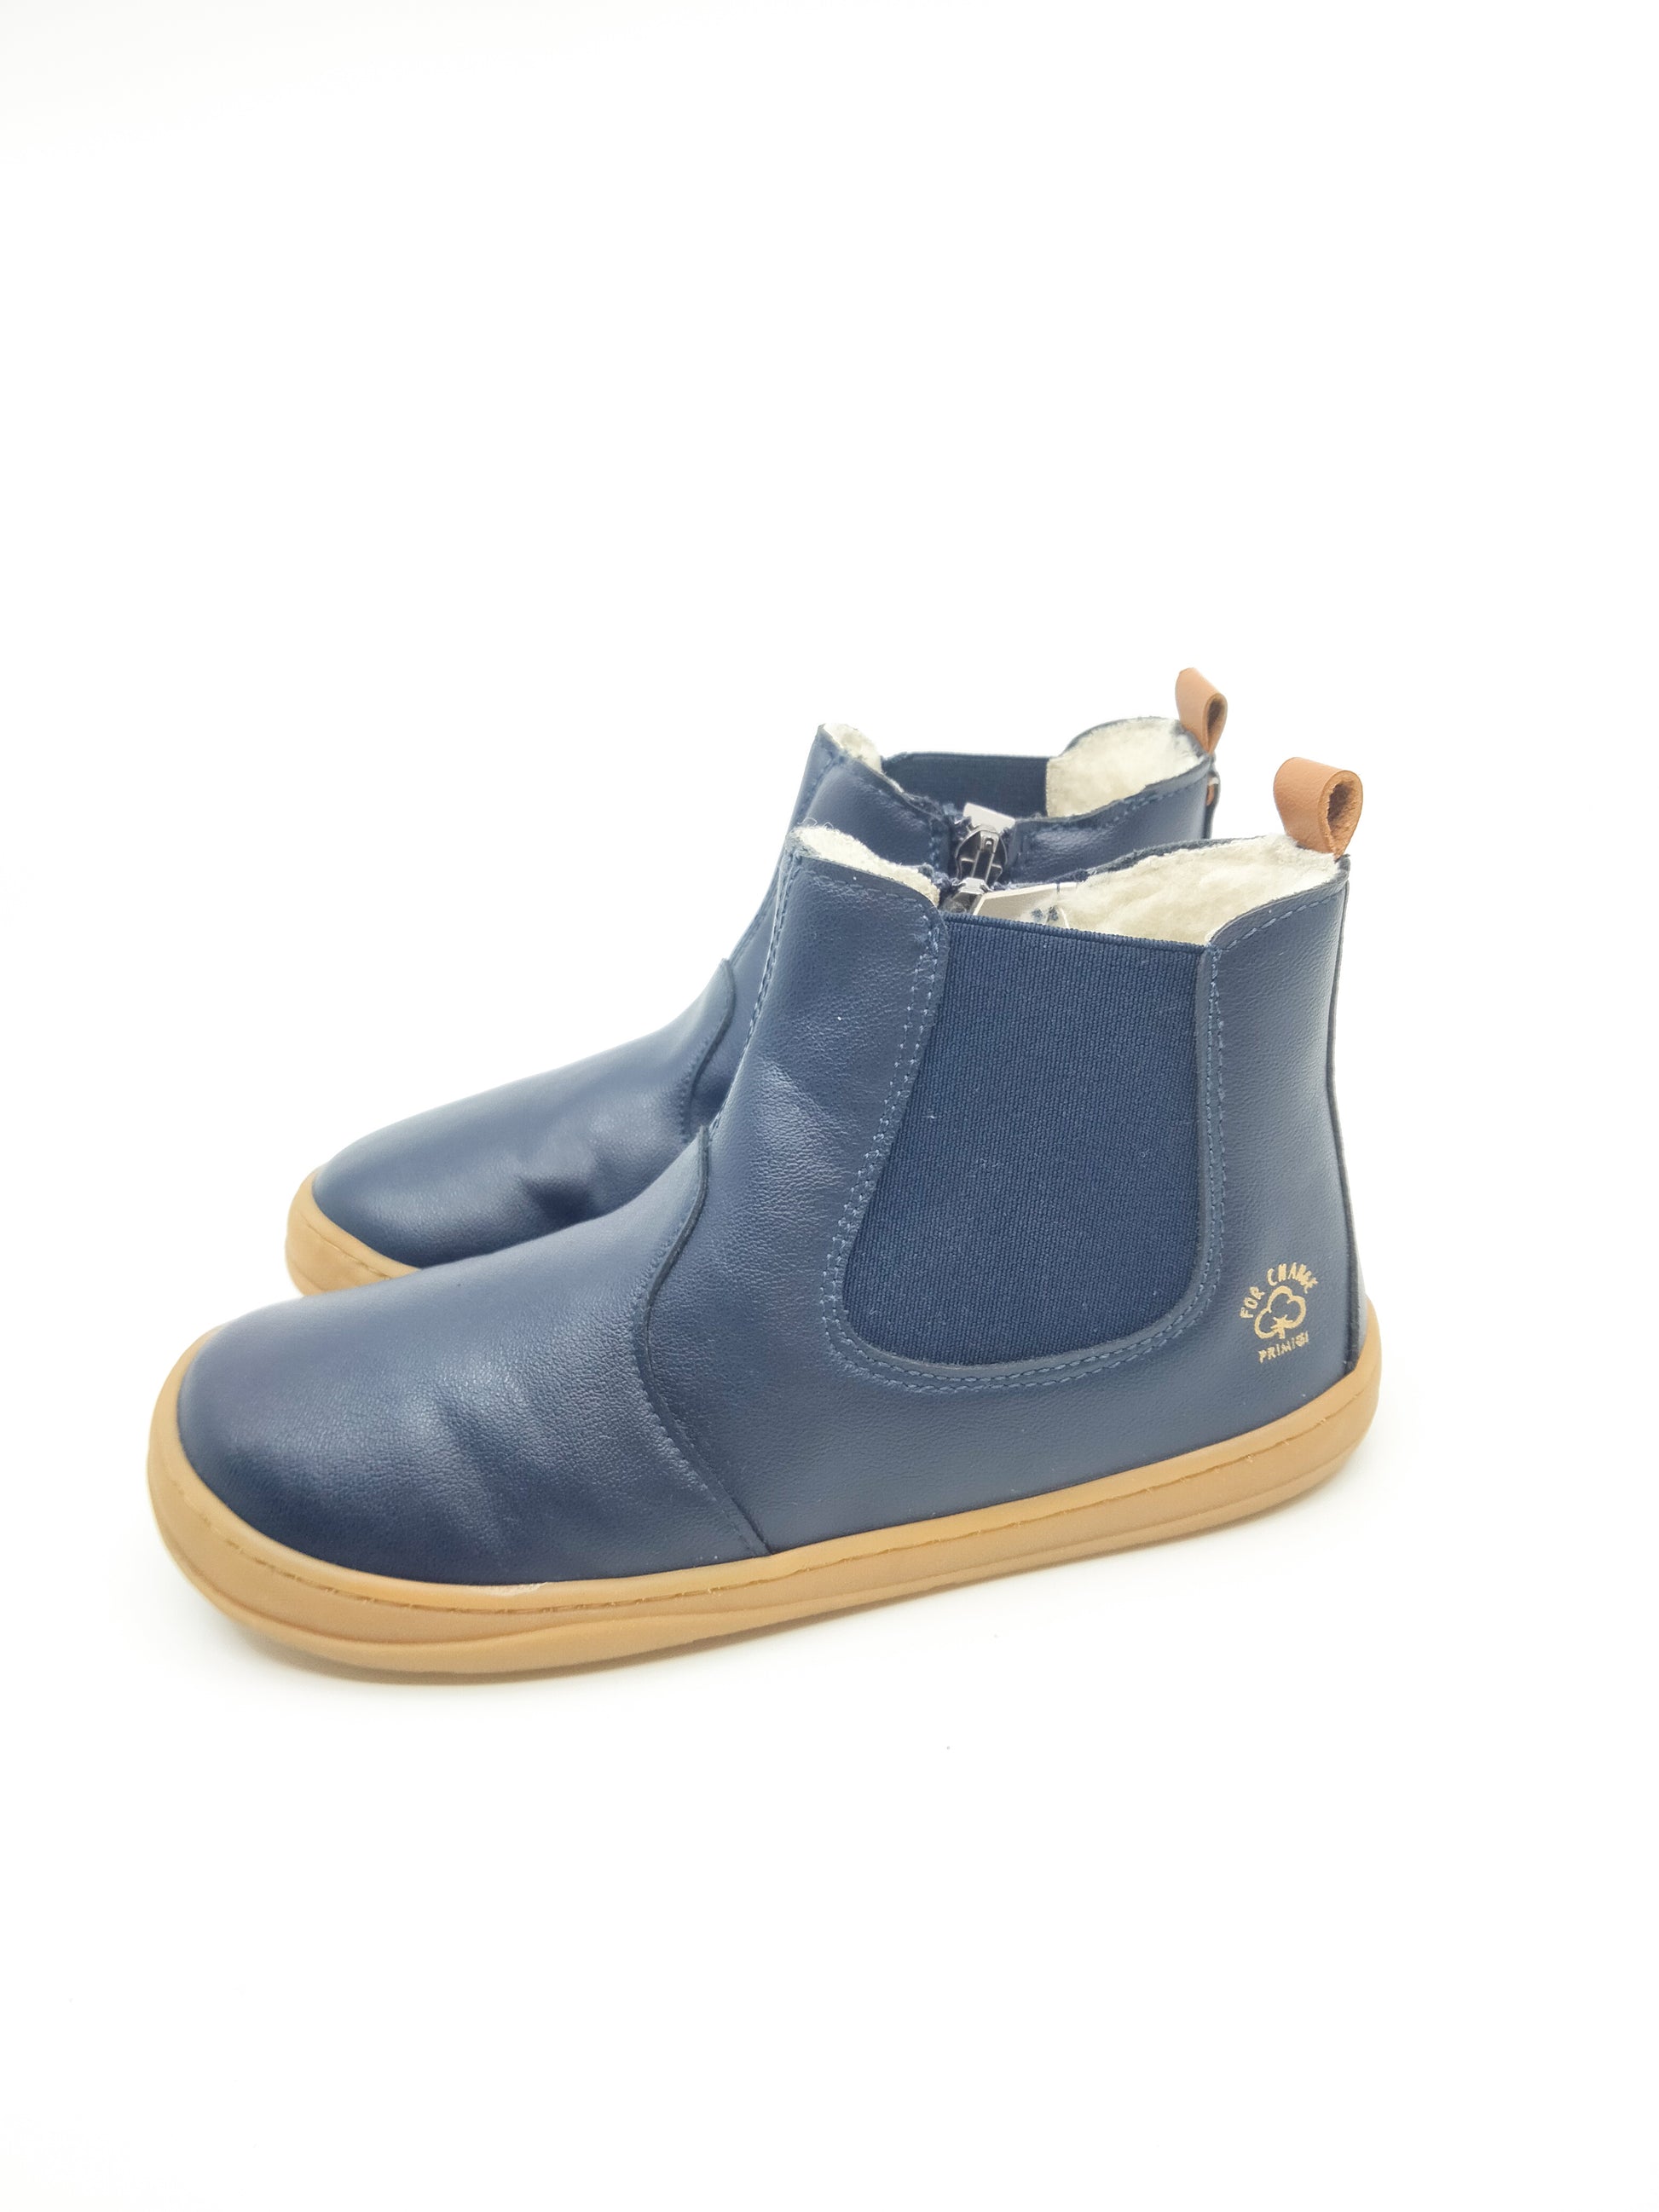 Tummansiniset Chelsea boots tyyliset kengät villavuorella